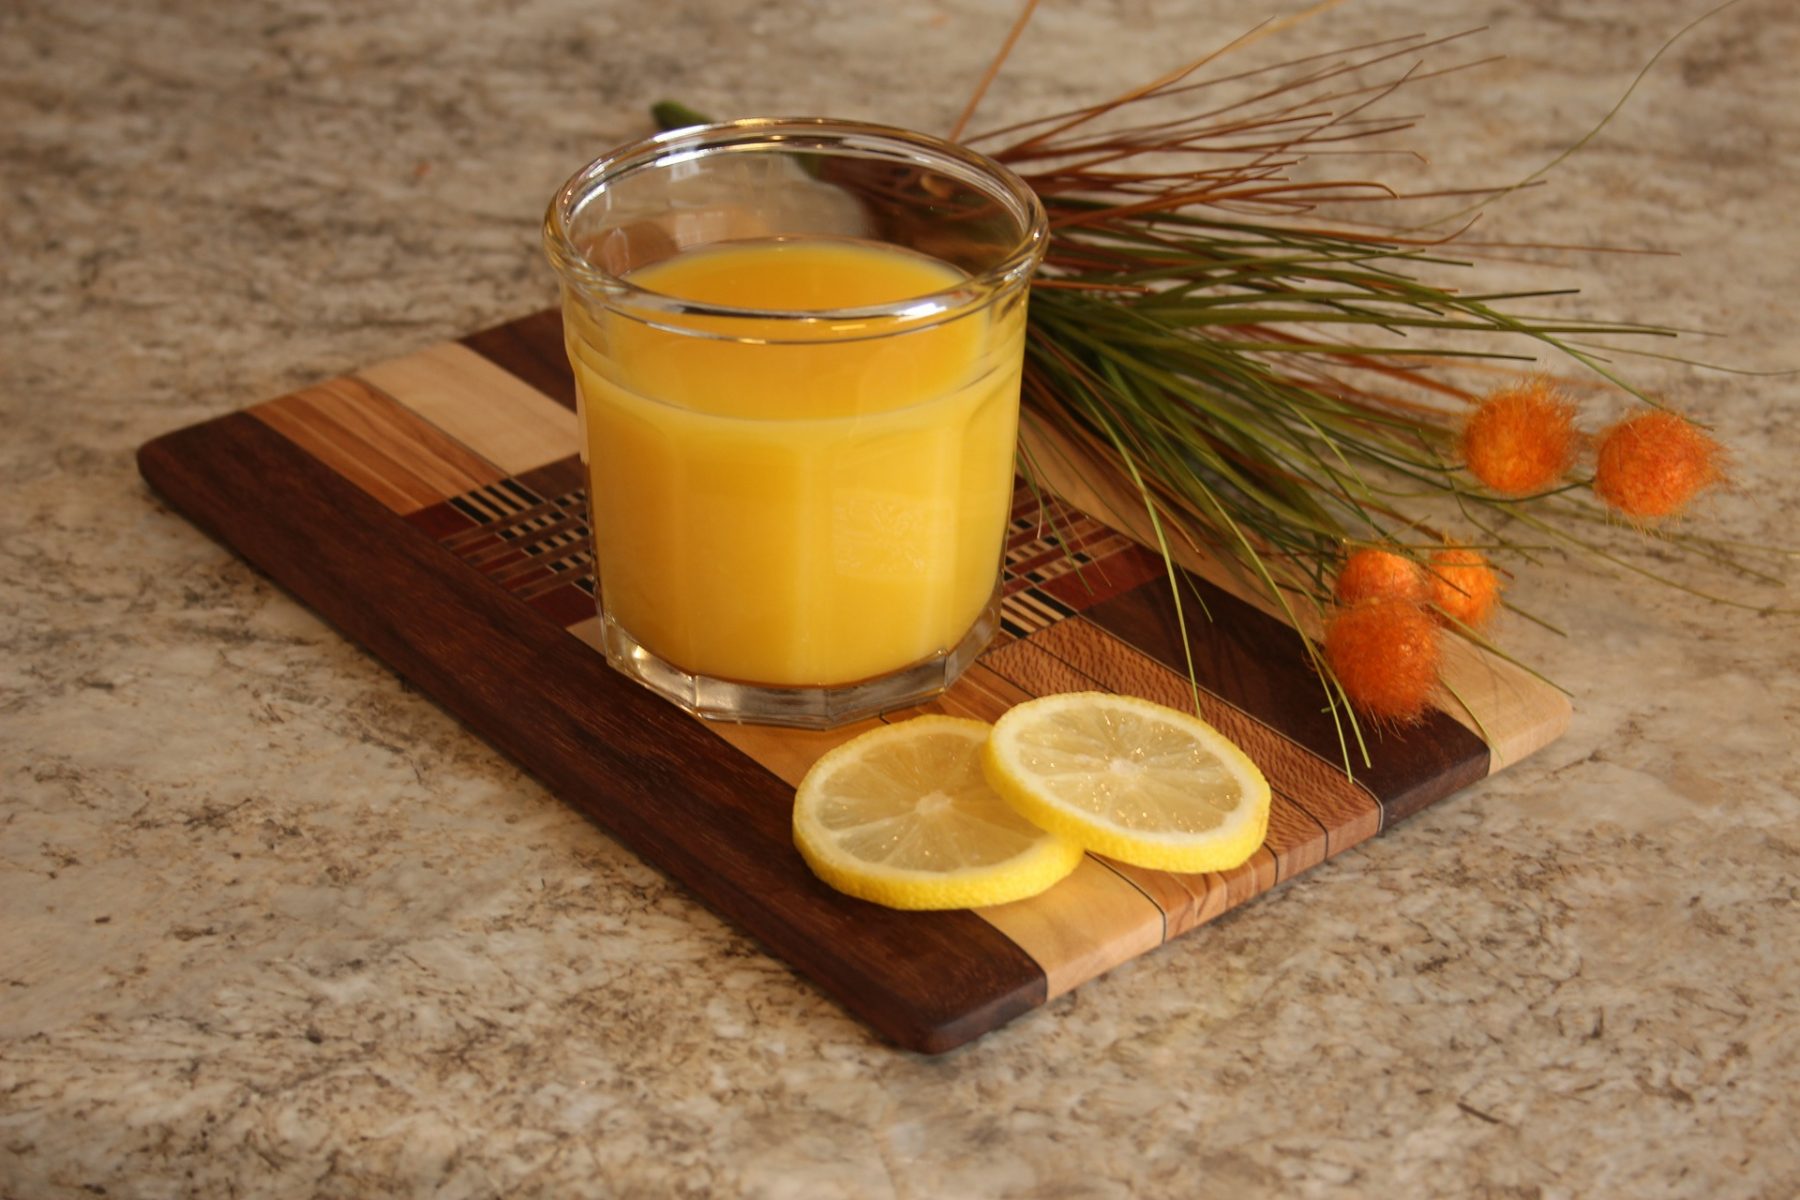 Χυμός πορτοκάλι φλεγμονή: Ο χυμός πορτοκαλιού βοηθά στην καταπολέμηση της φλεγμονής και του οξειδωτικού στρες.